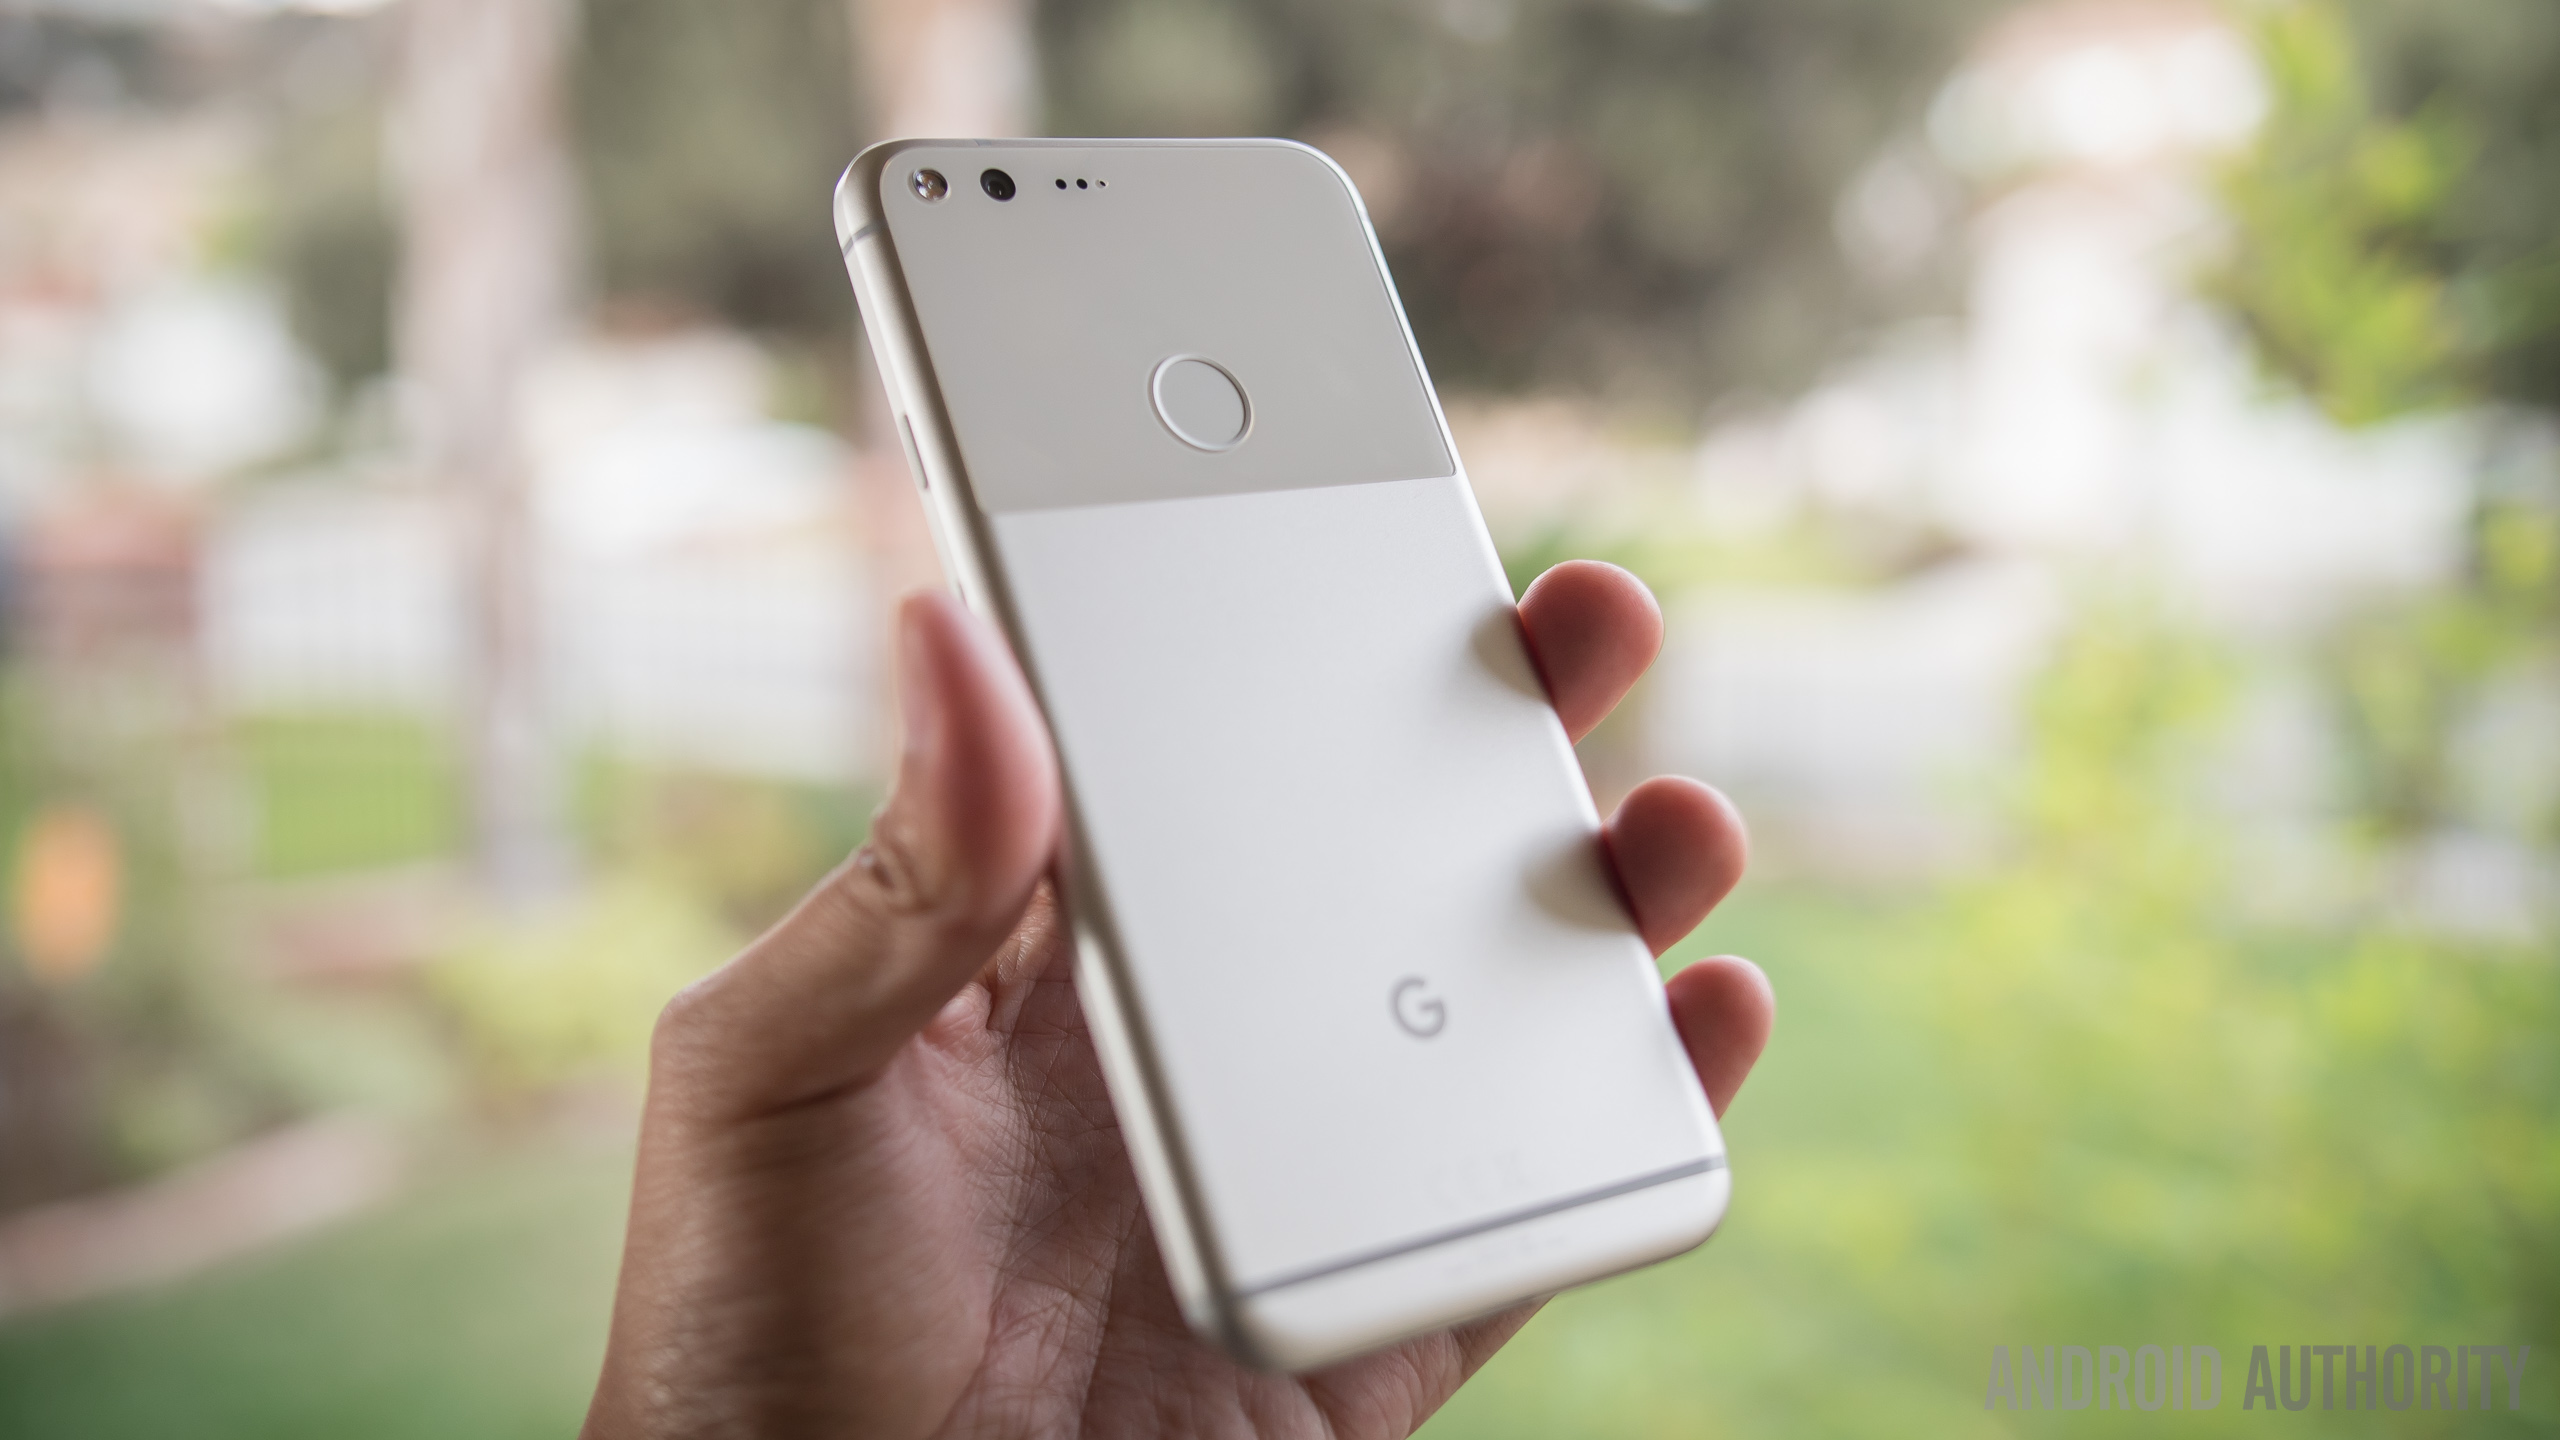 Google Pixel smartphone in hand